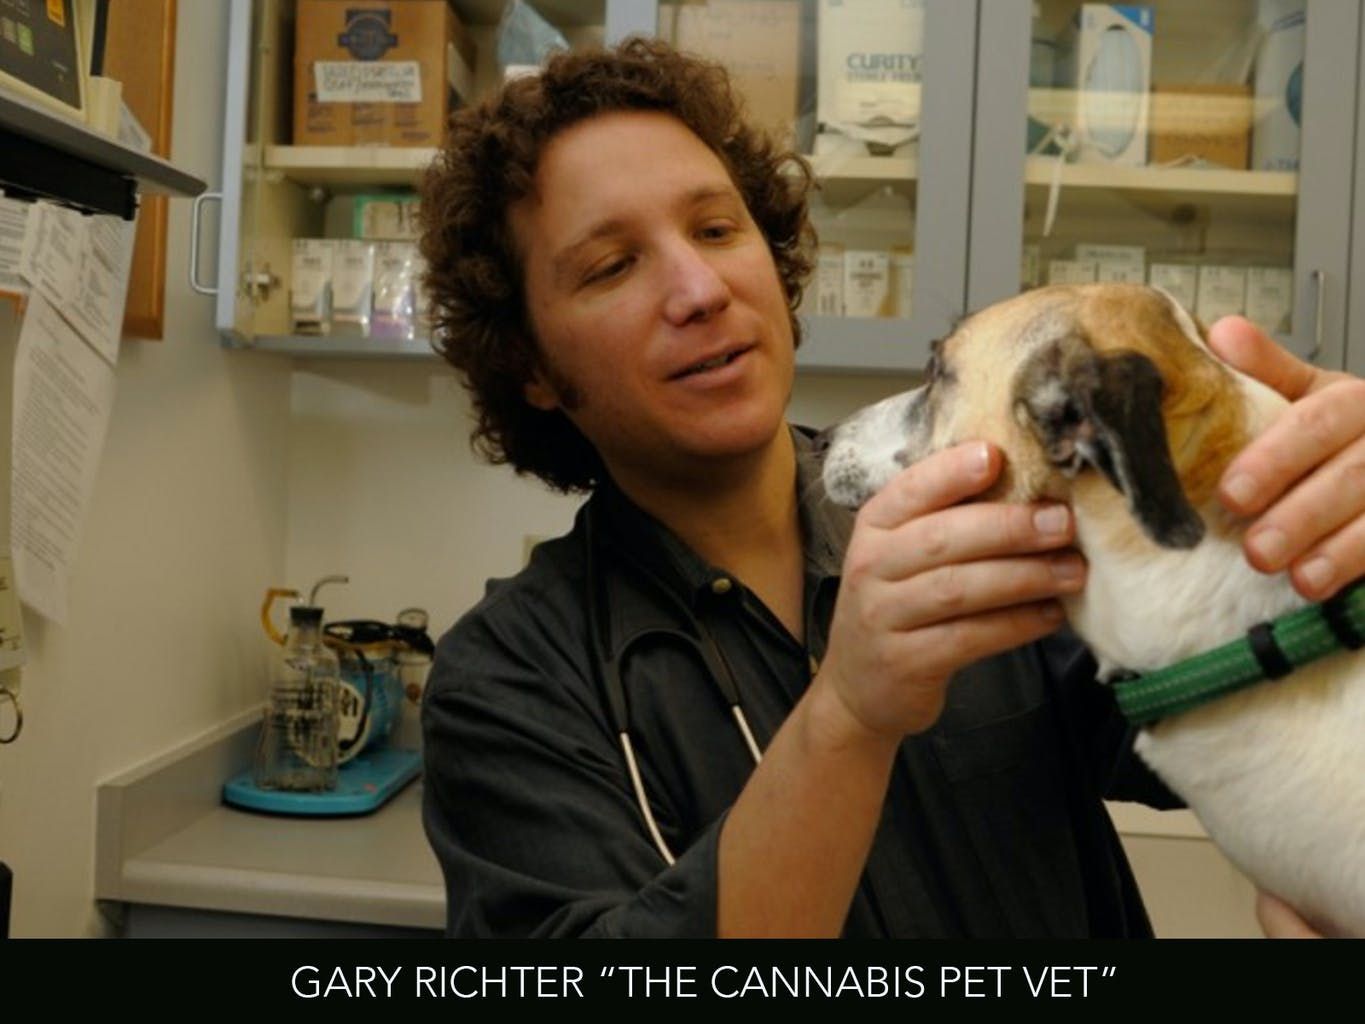 interview_with_dr_gary_richter_the_cannabis_pet_vet_d241a9a218